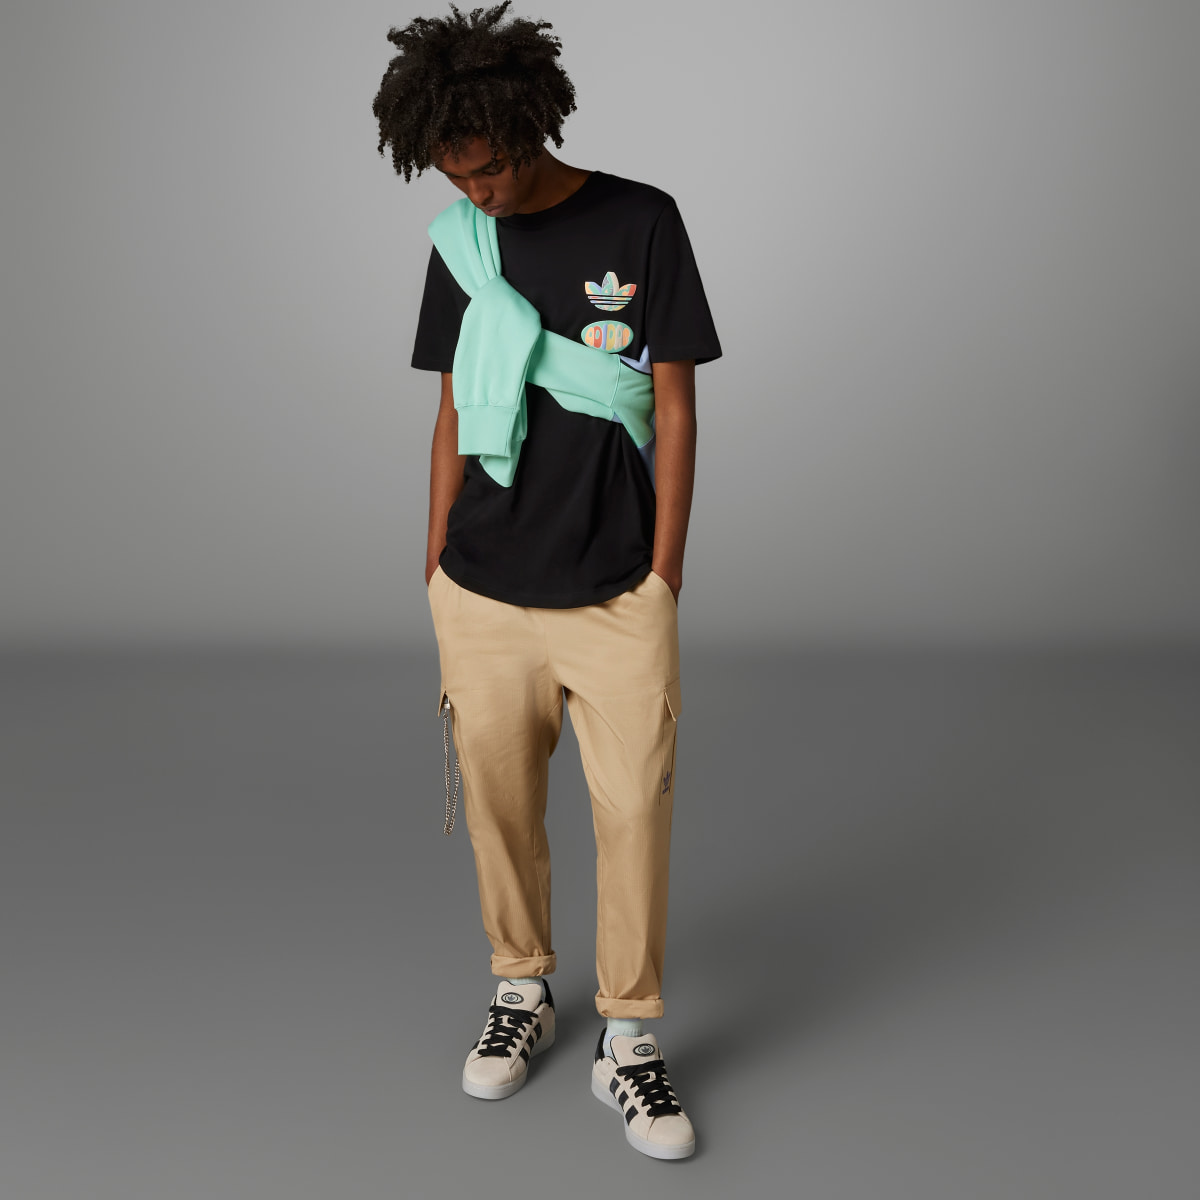 Adidas T-shirt avec graphisme avant/arrière Enjoy Summer. 4